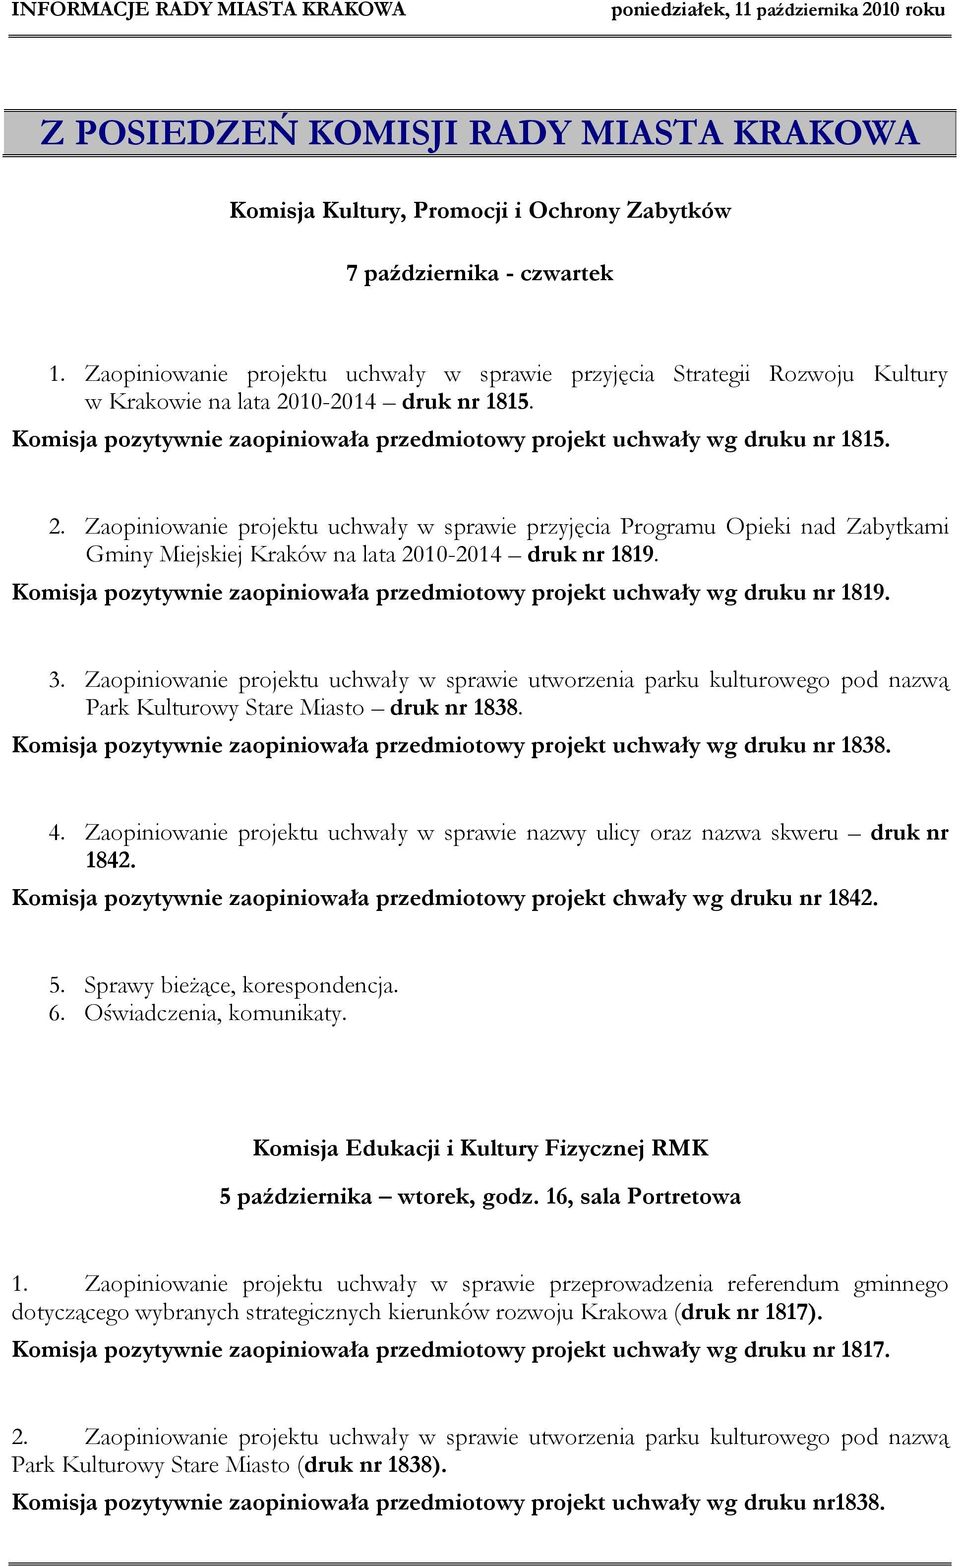 2. Zaopiniowanie projektu uchwały w sprawie przyjęcia Programu Opieki nad Zabytkami Gminy Miejskiej Kraków na lata 2010-2014 druk nr 1819.